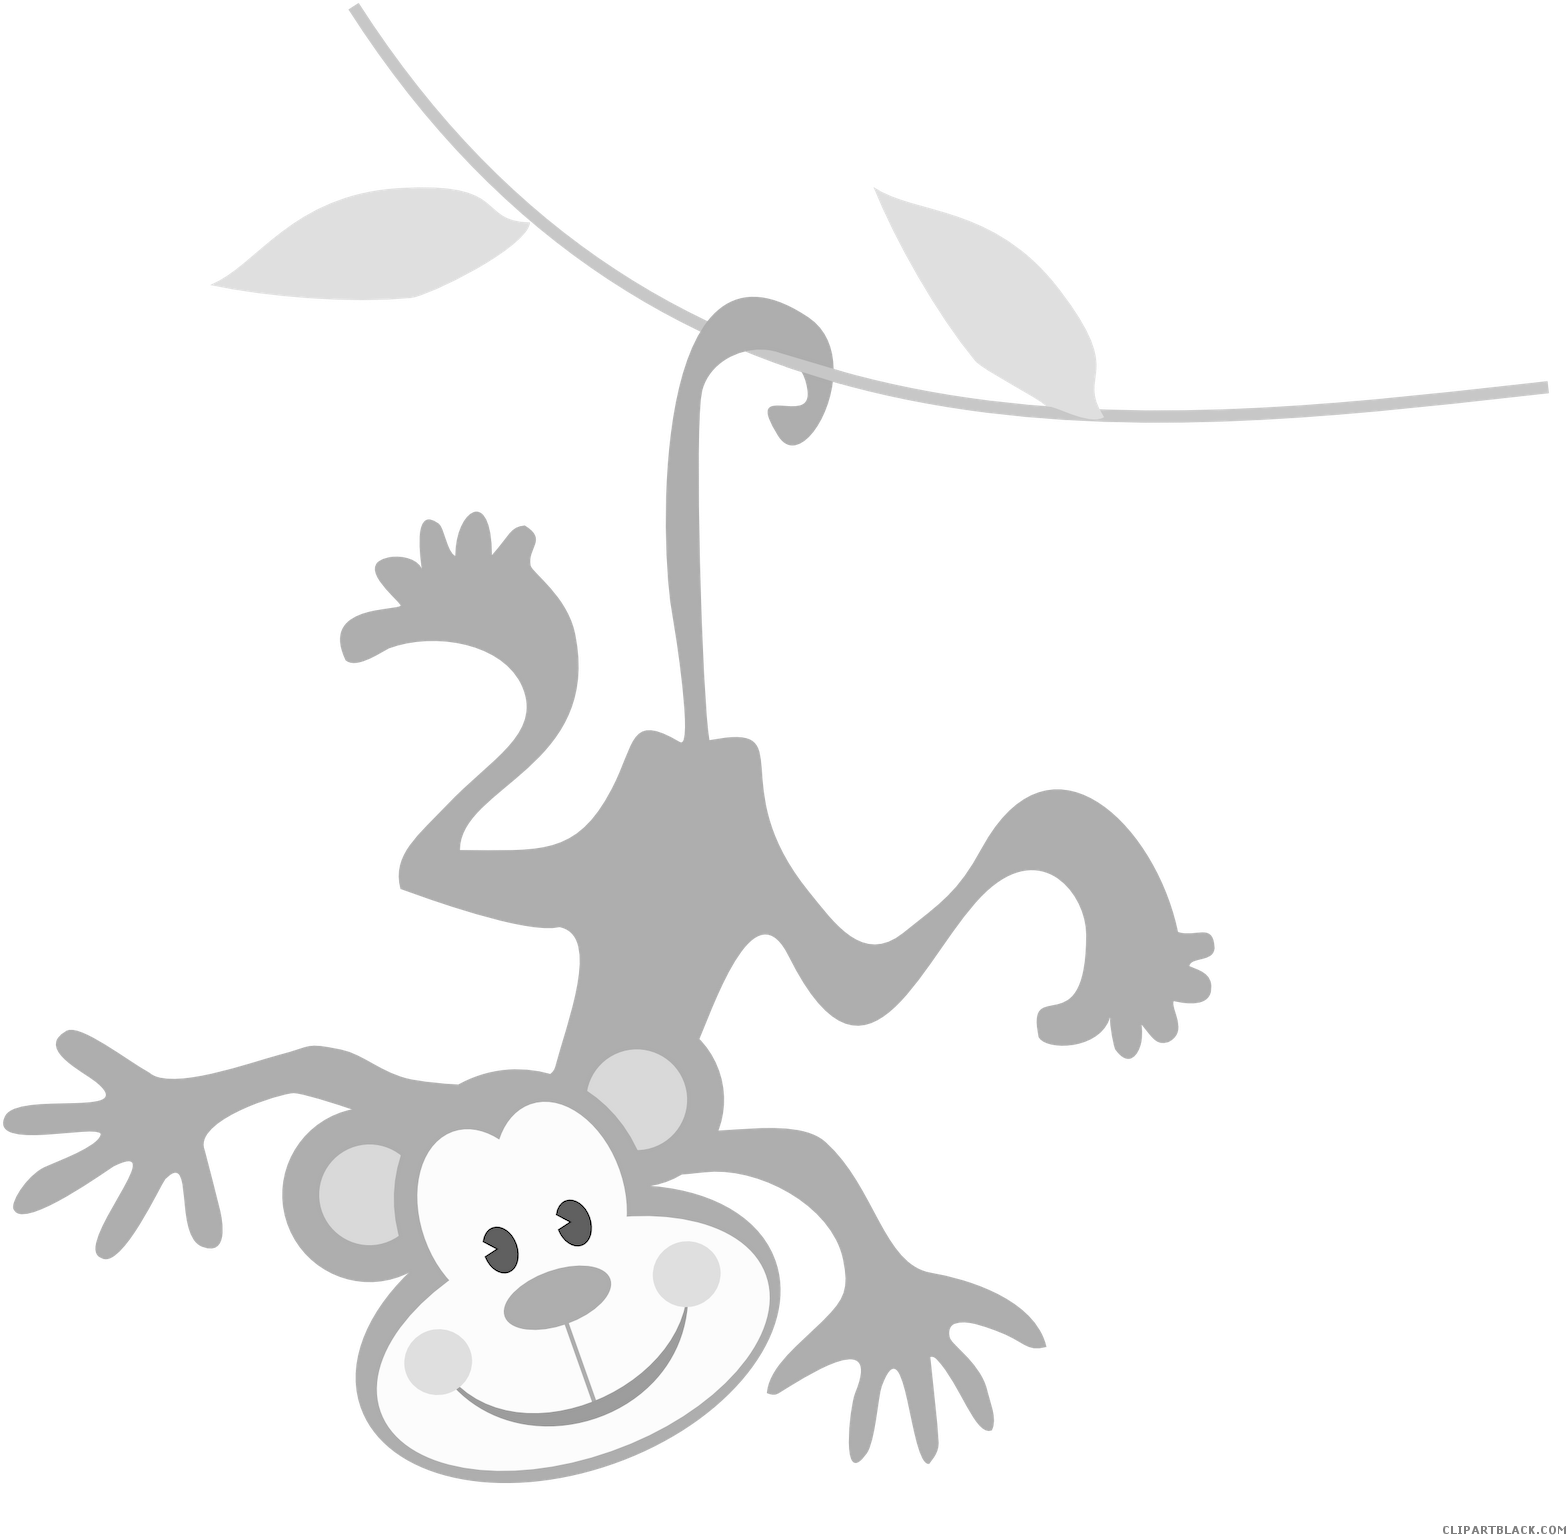 Monkey Animal Free Black White Clipart Images Clipartblack - Basic English (1600x1600)